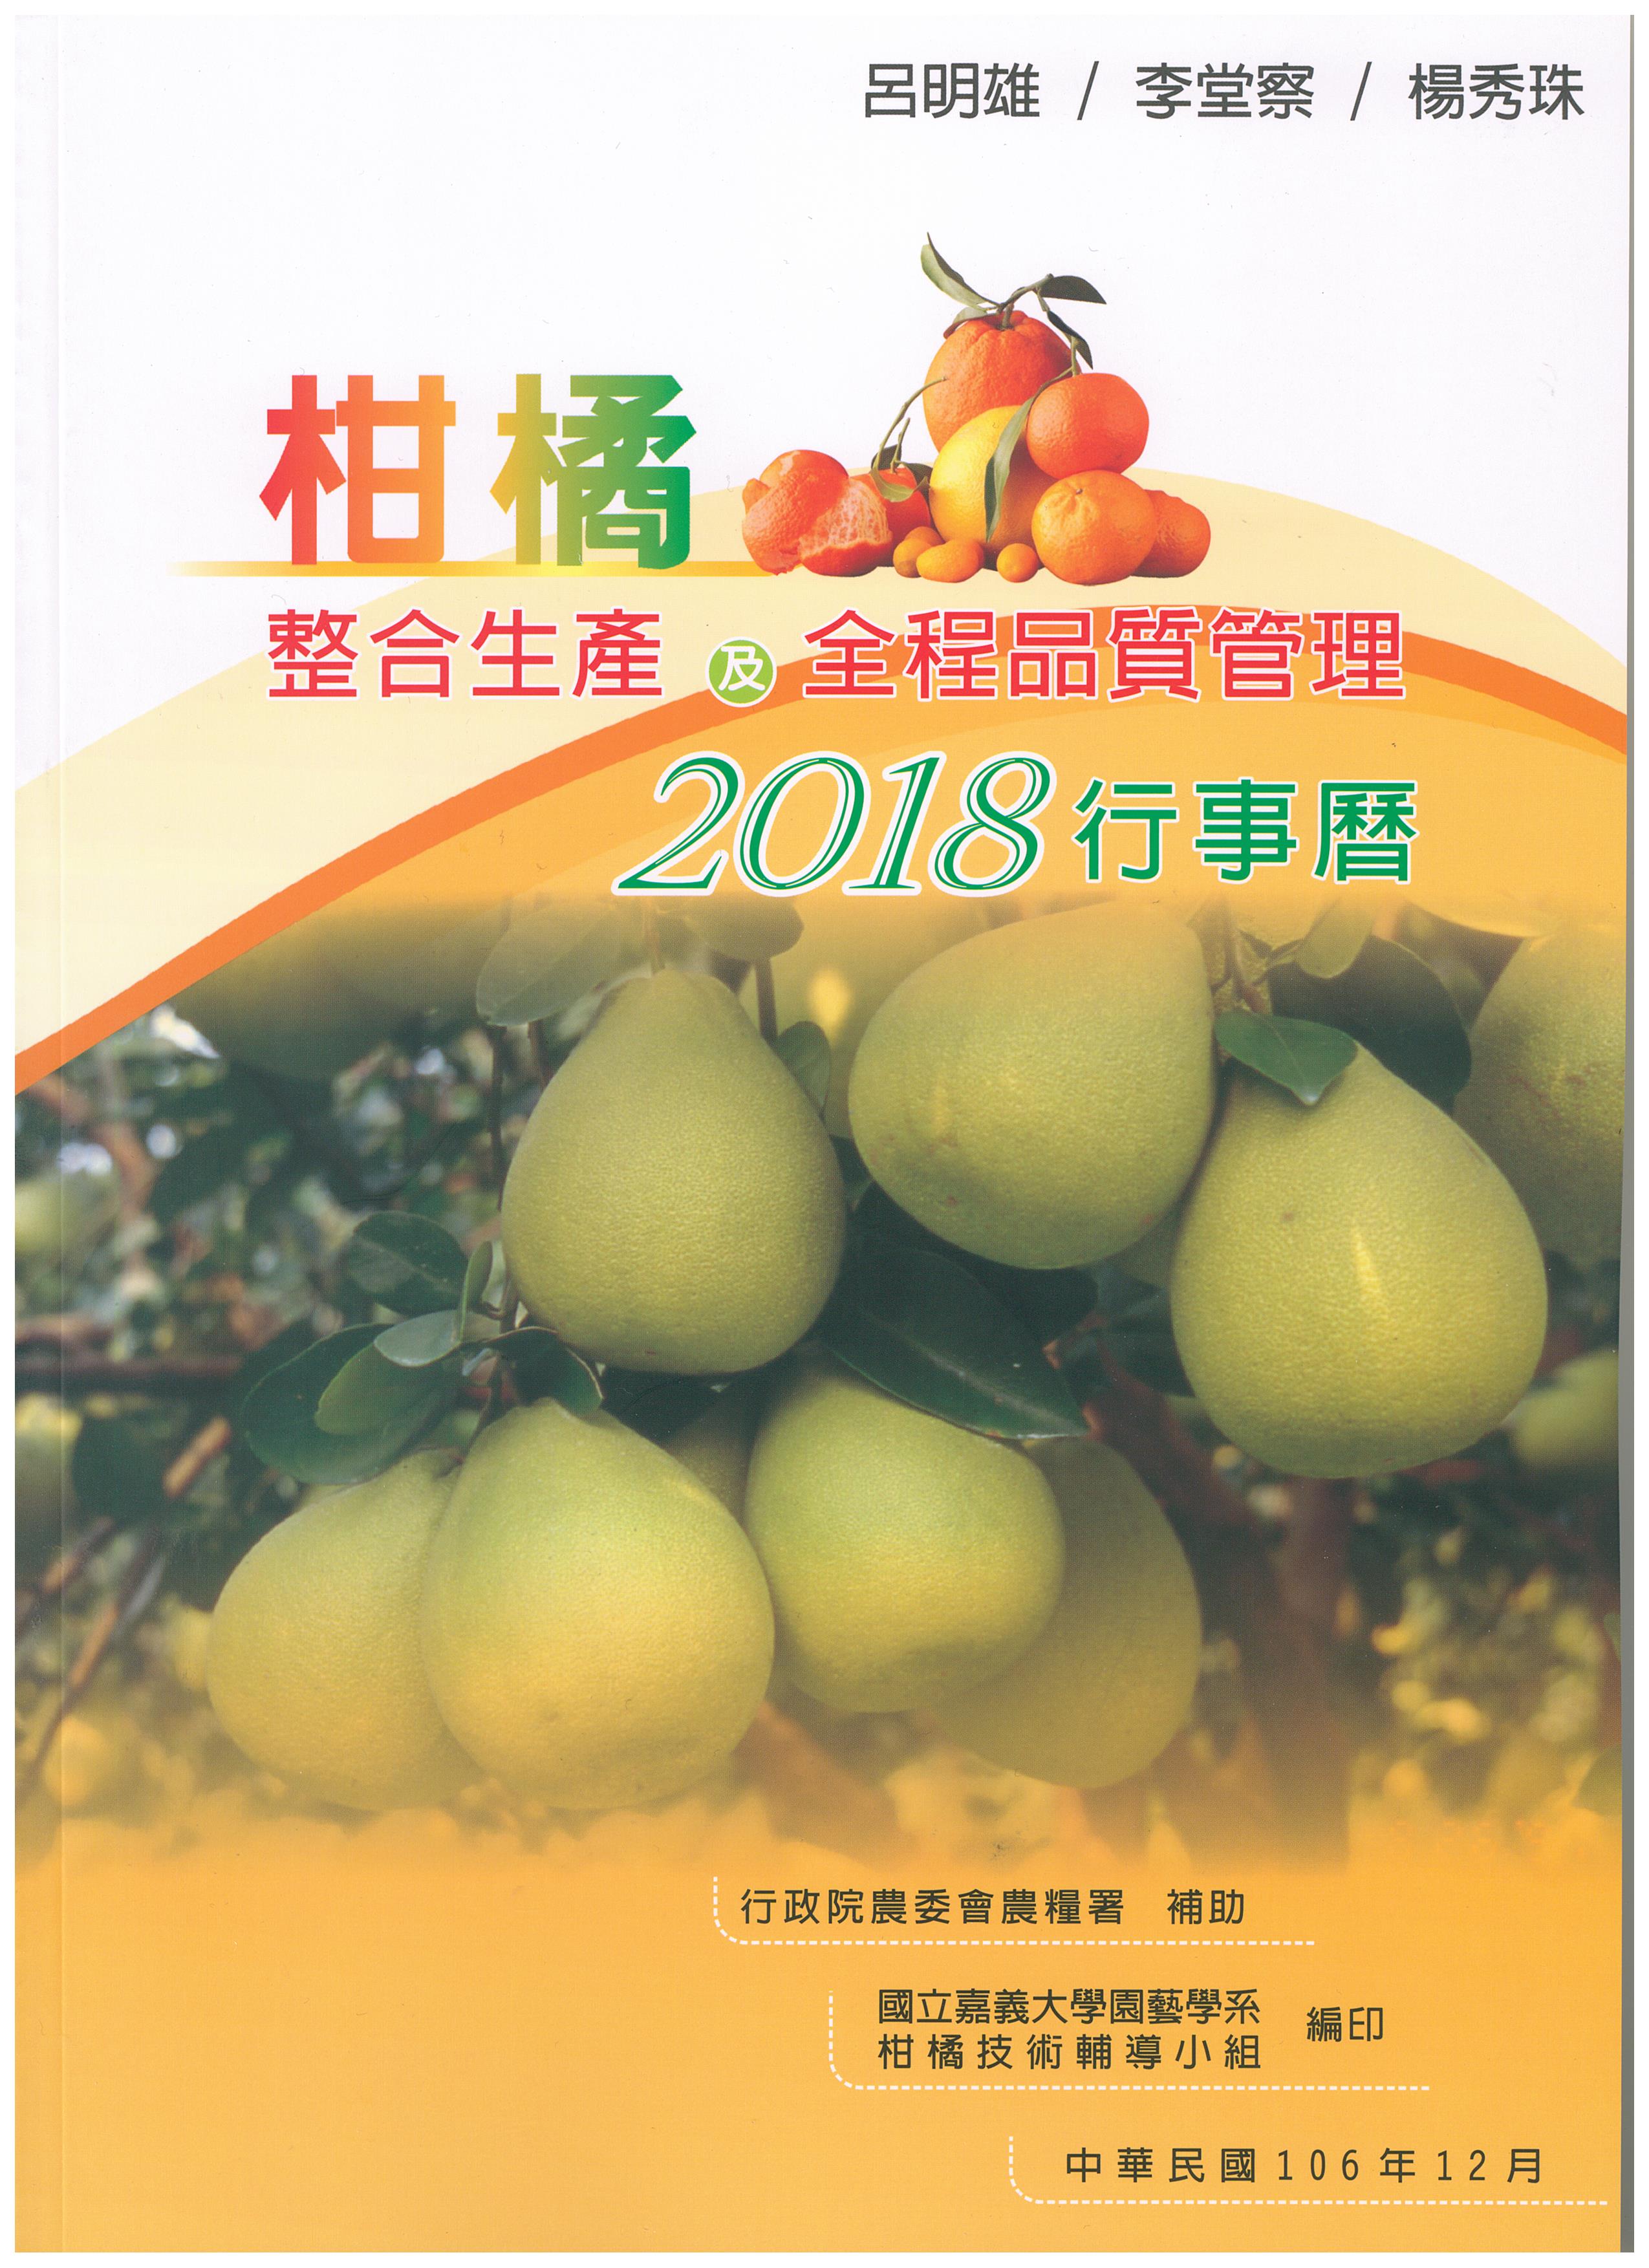 2018柑橘整合生產及全程品質管理行事曆